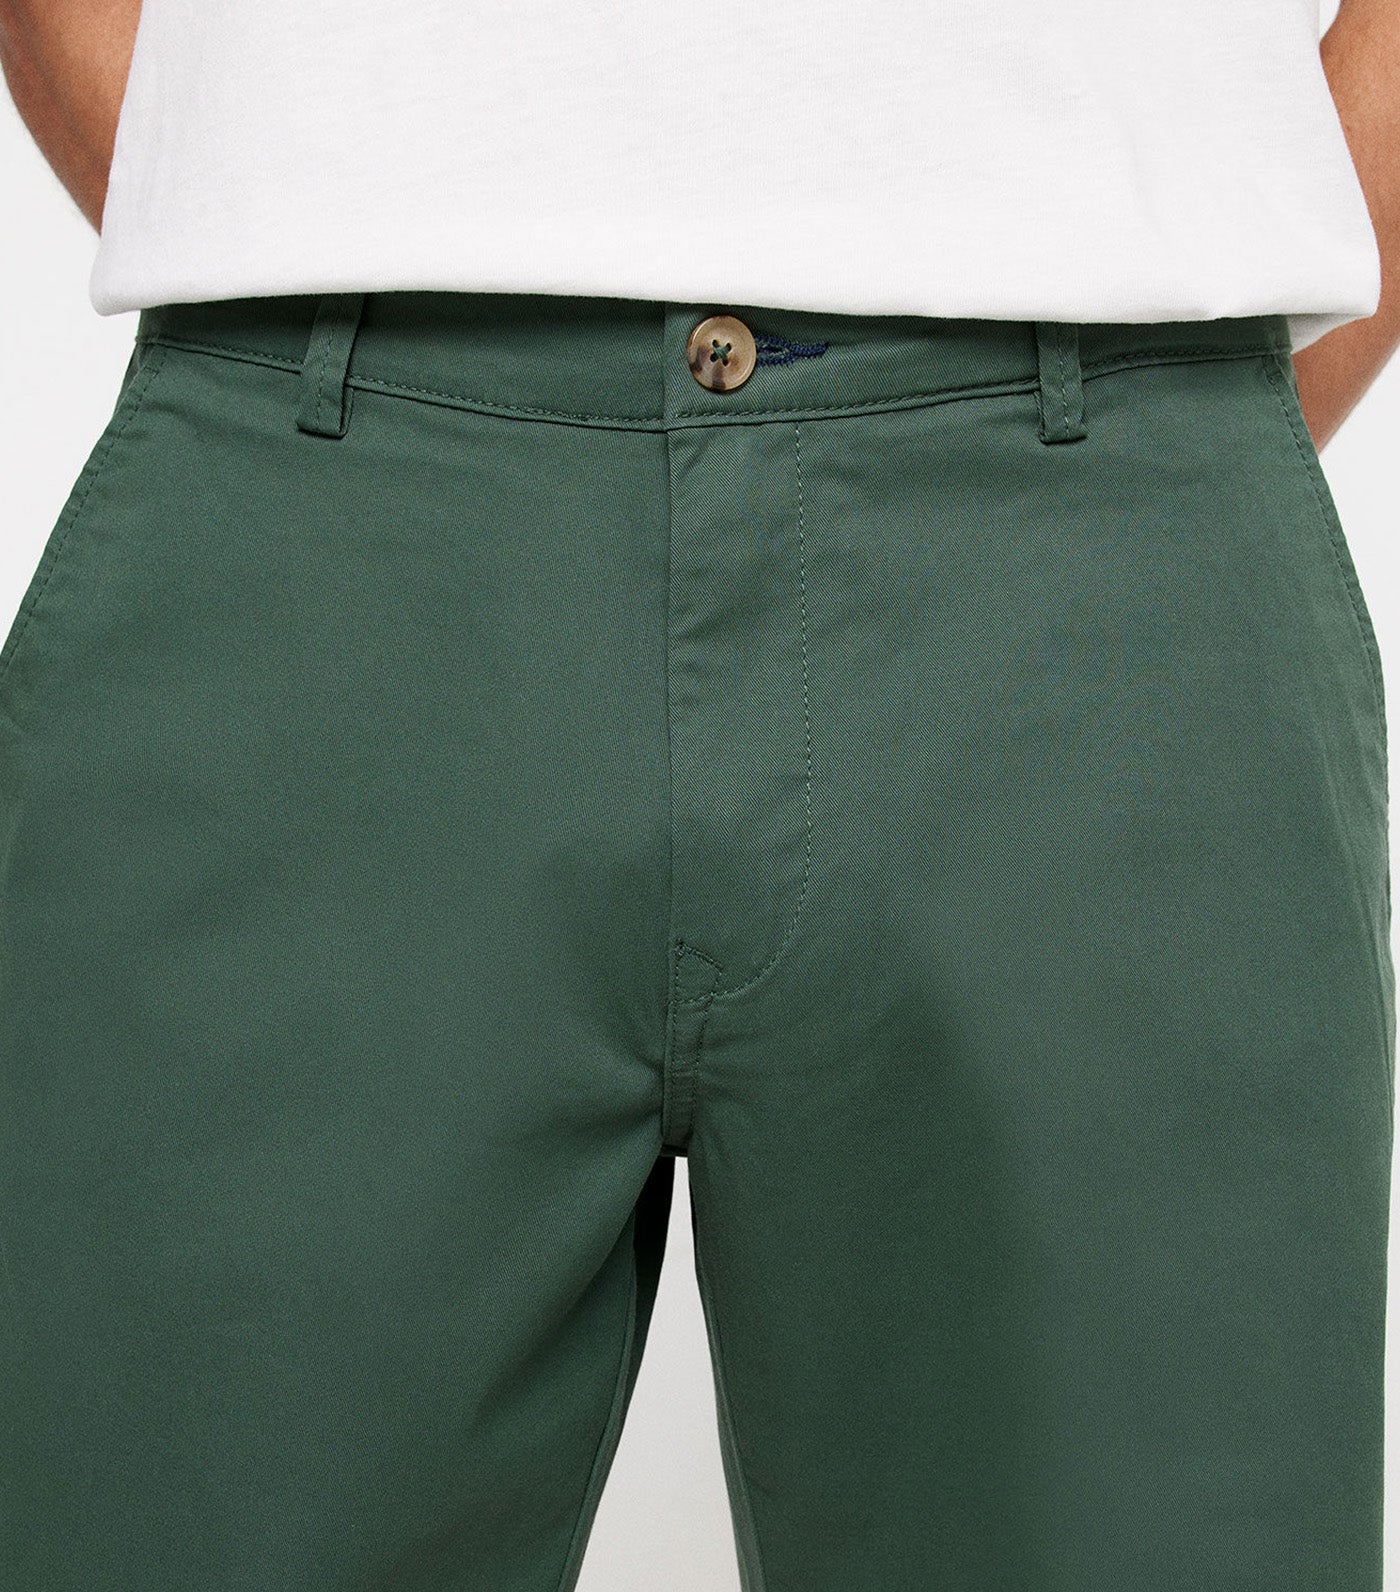 Bermuda Color Chino Shorts Green